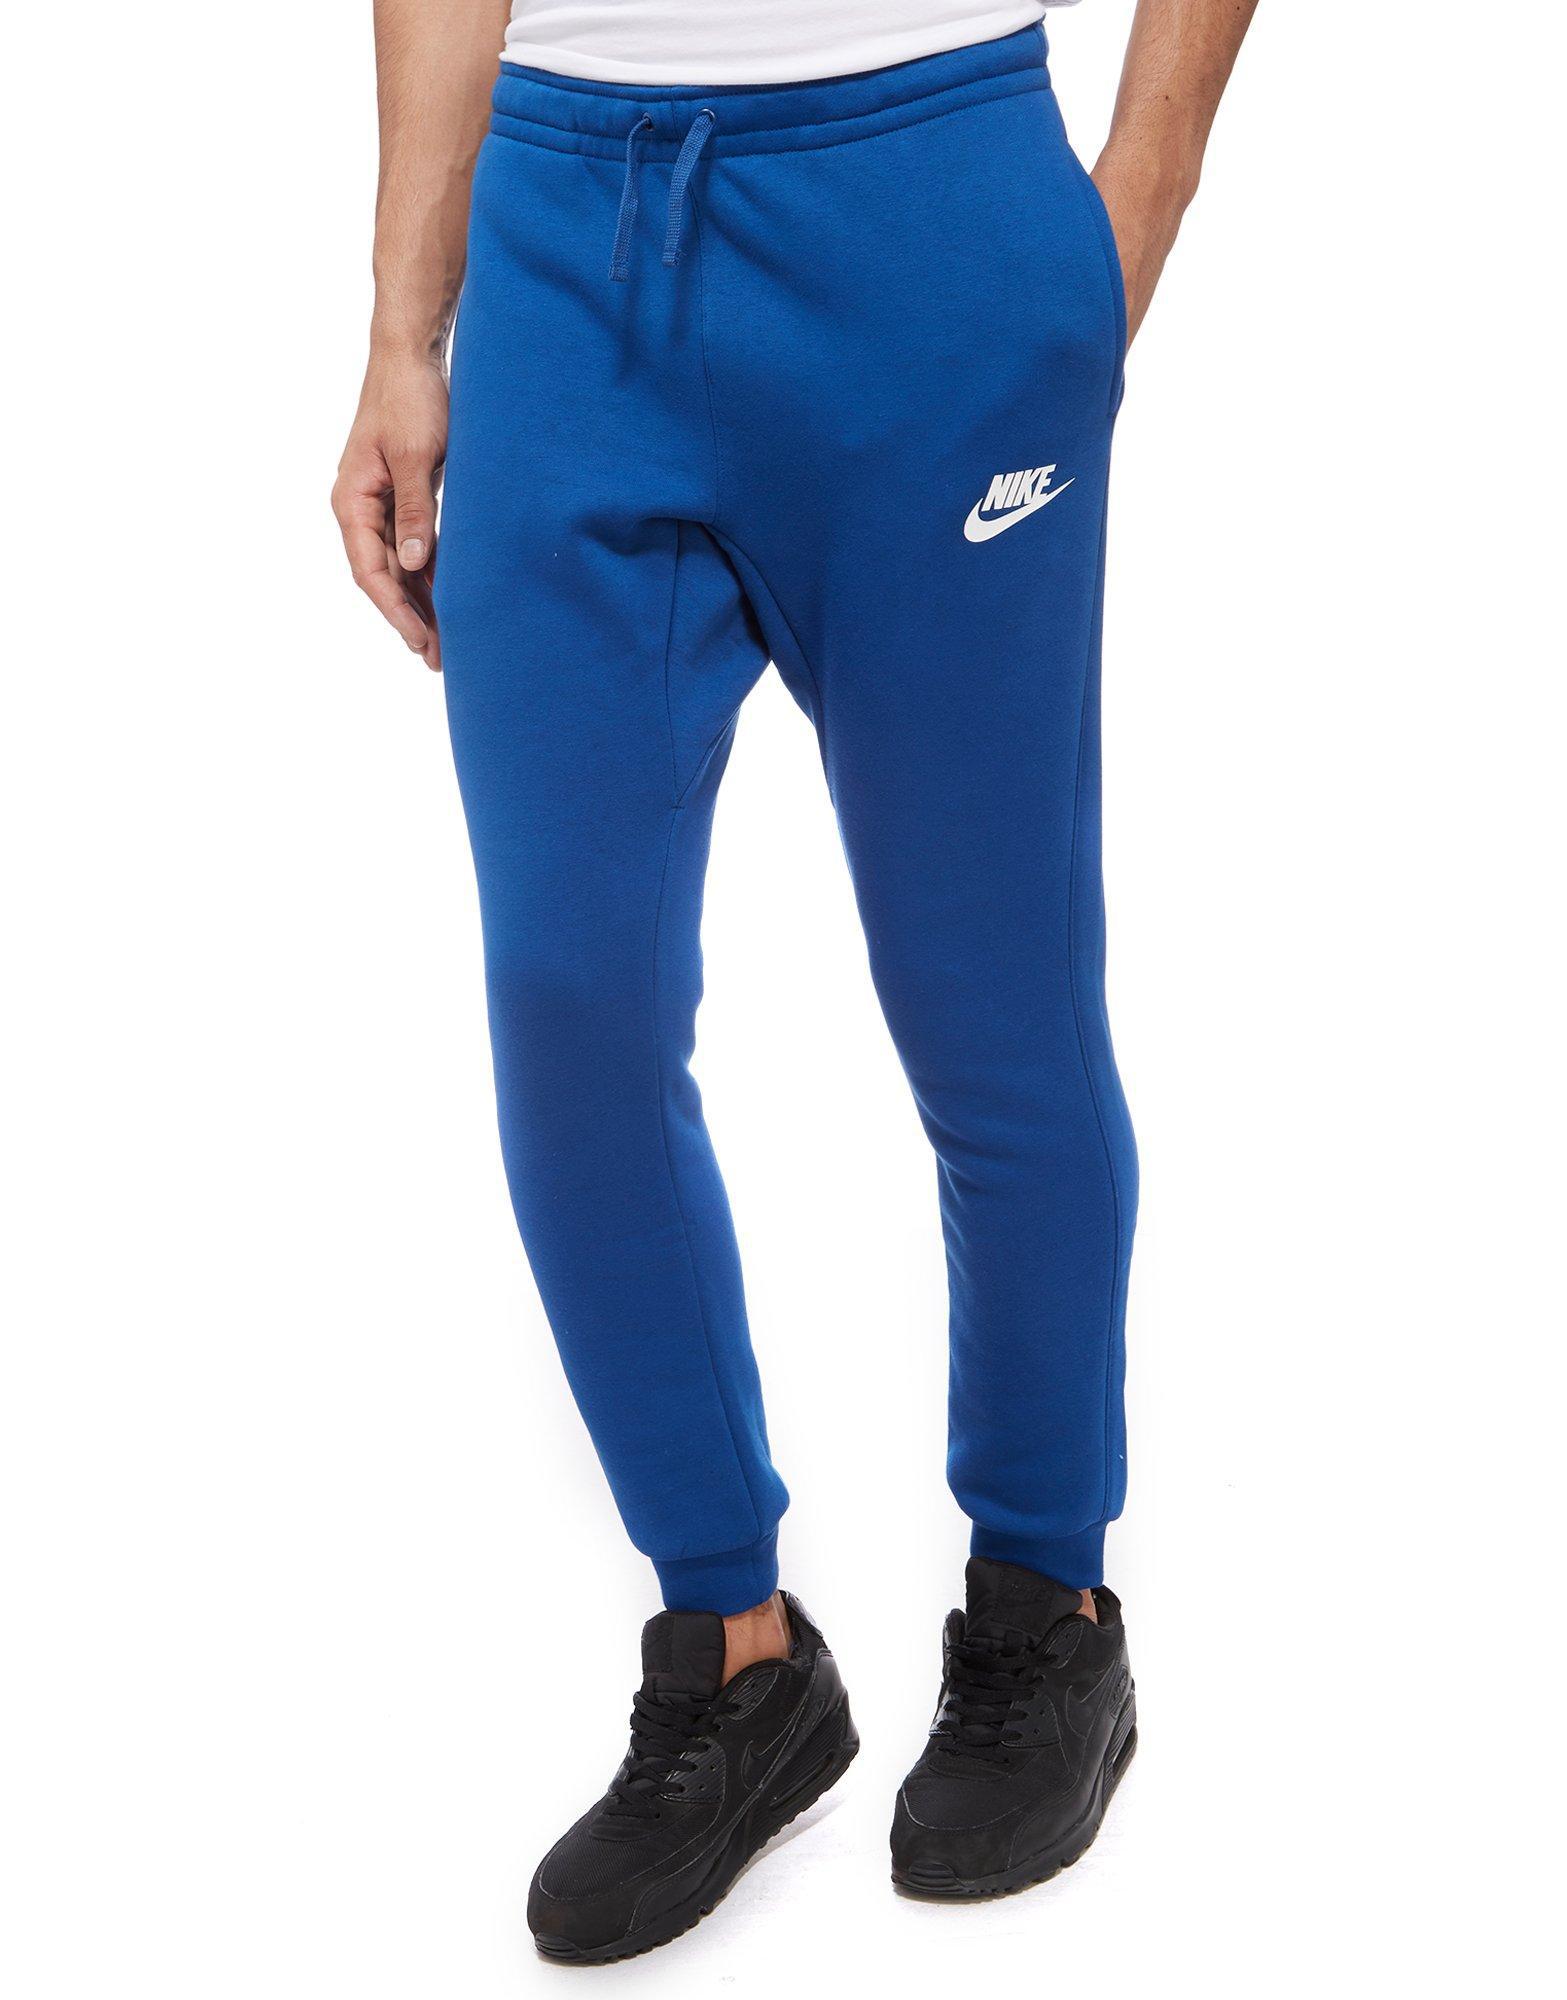 Nike Fleece Just Do It Logo Track Pants in Blue for Men - Lyst